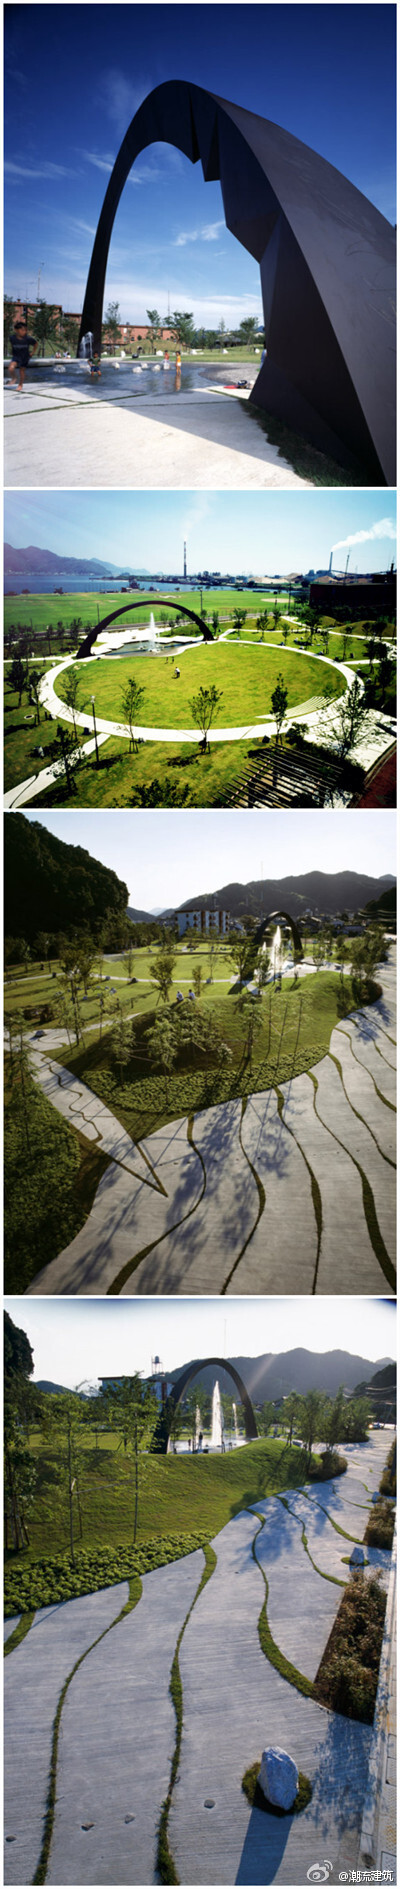 景观设计精华——日本广岛佐伯平和公园